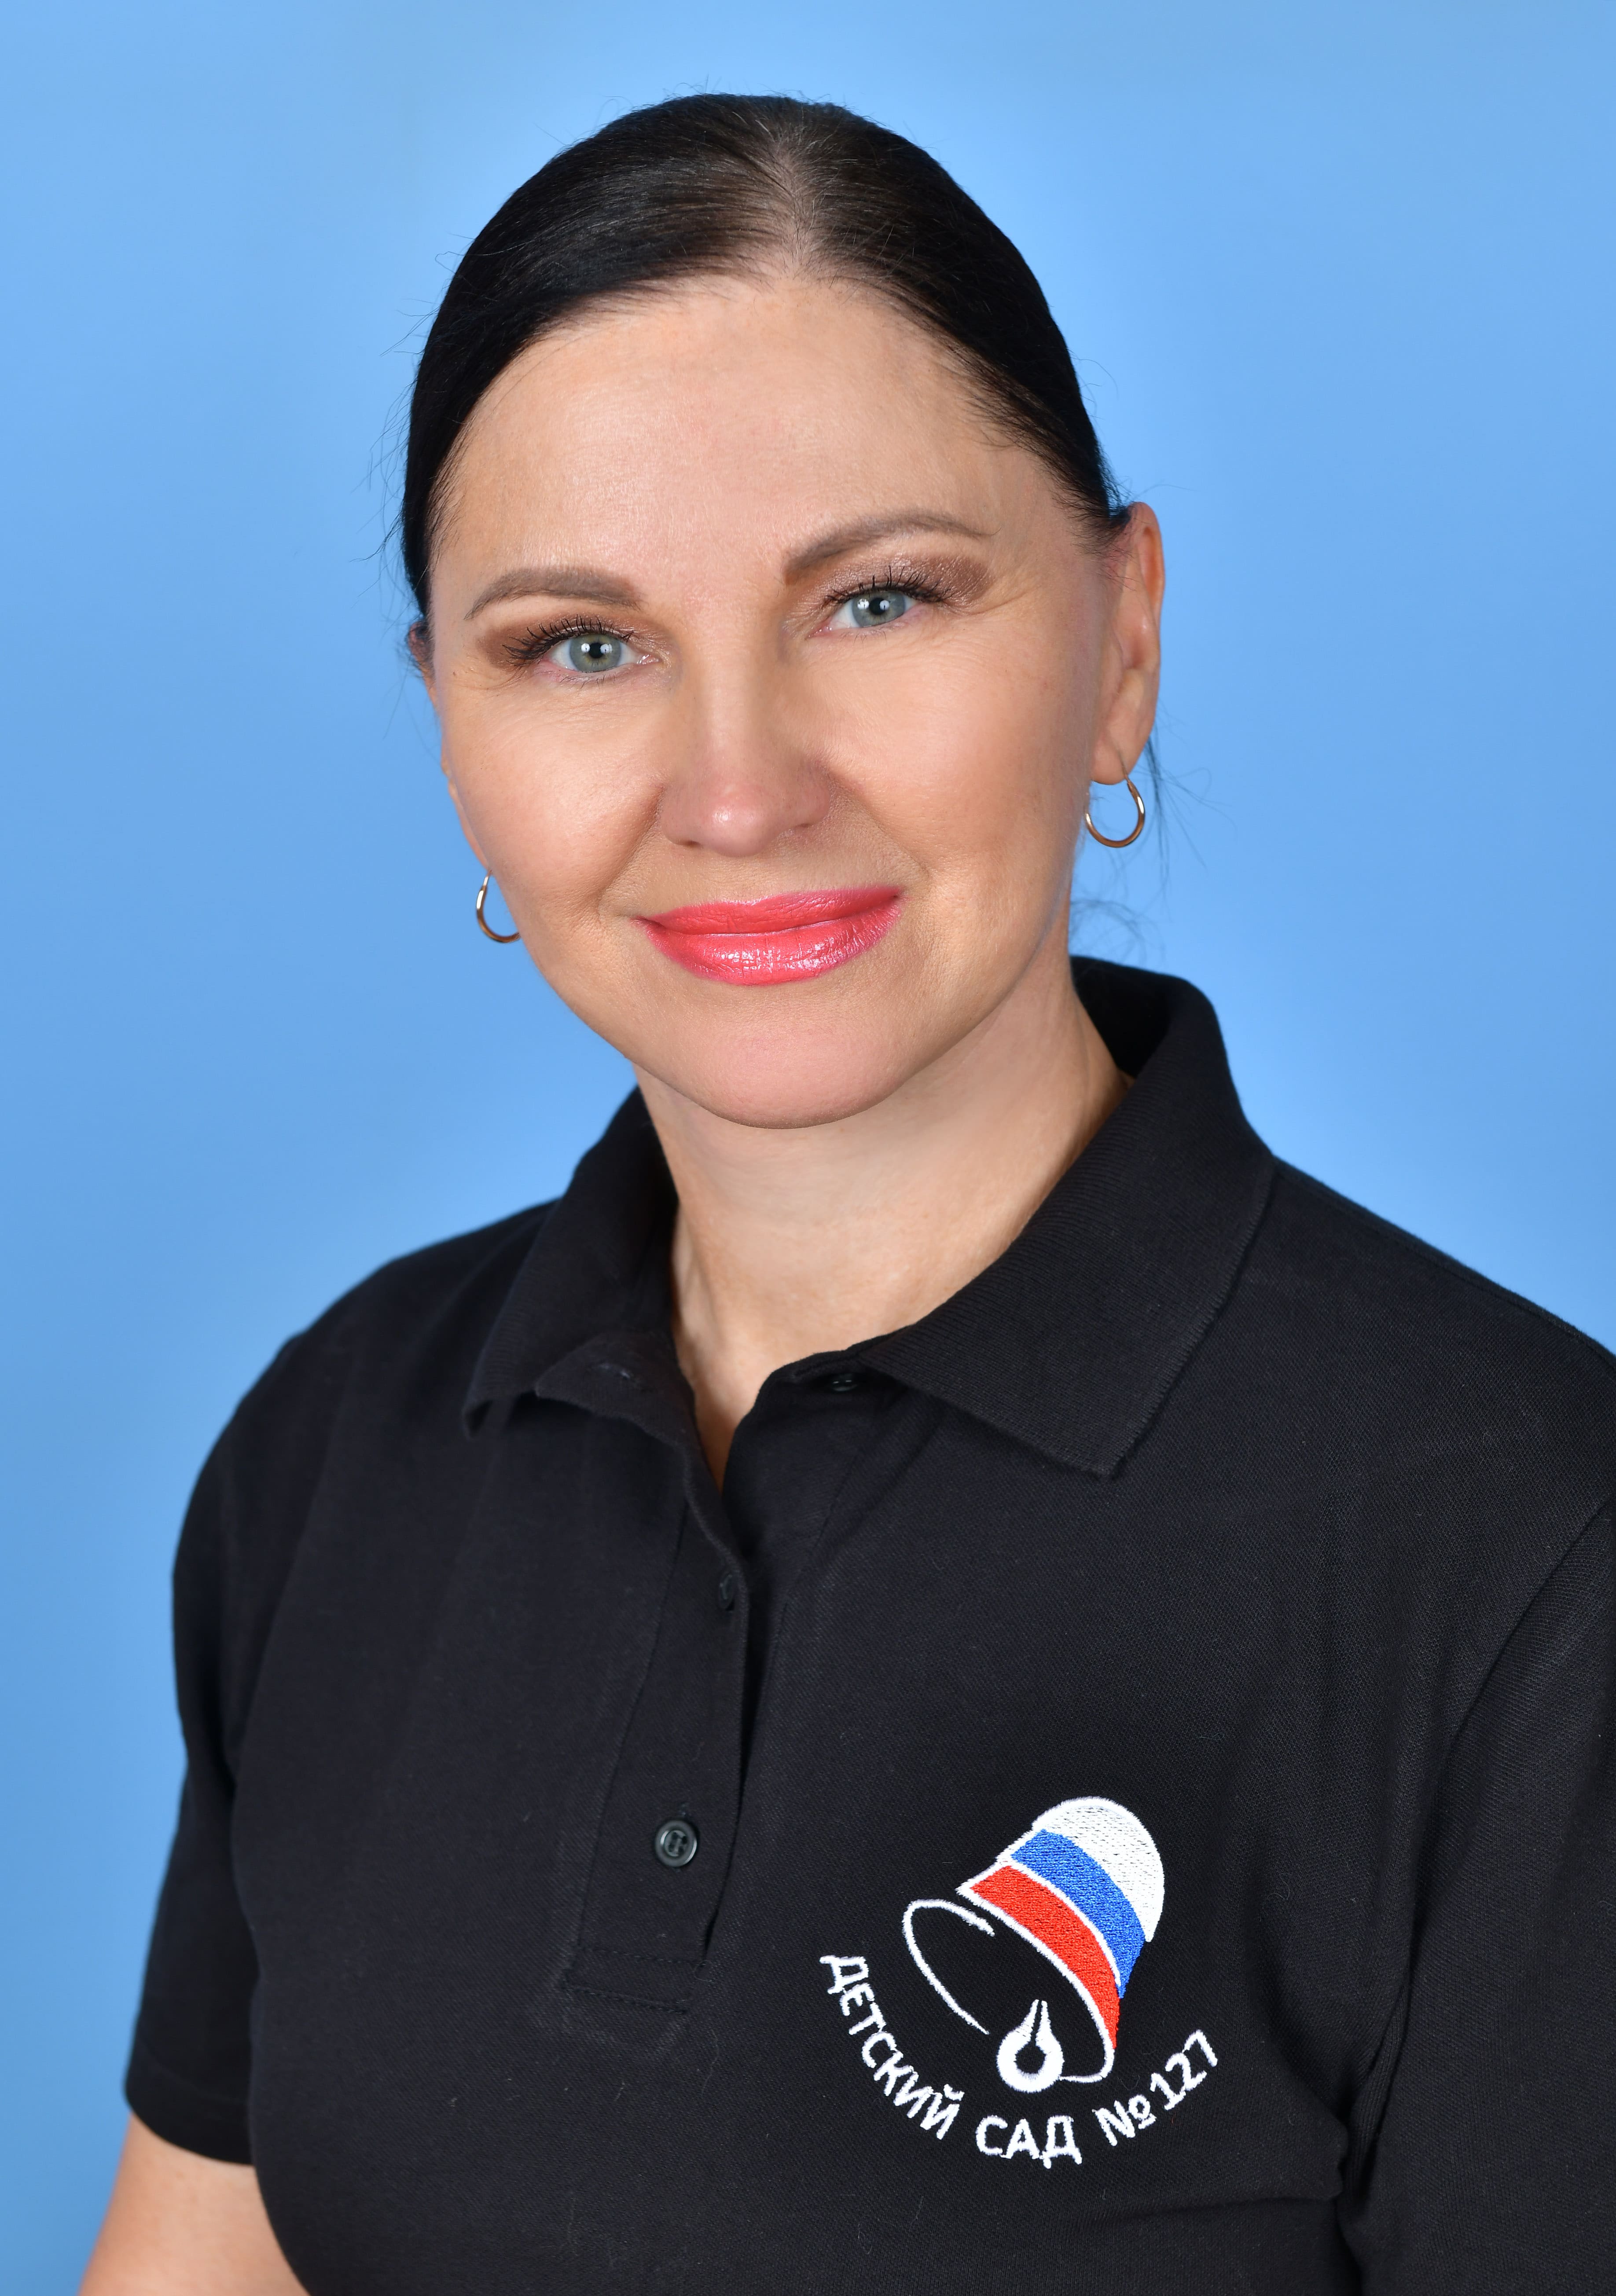 Педагогический работник Соловьева Наталья Олеговна.